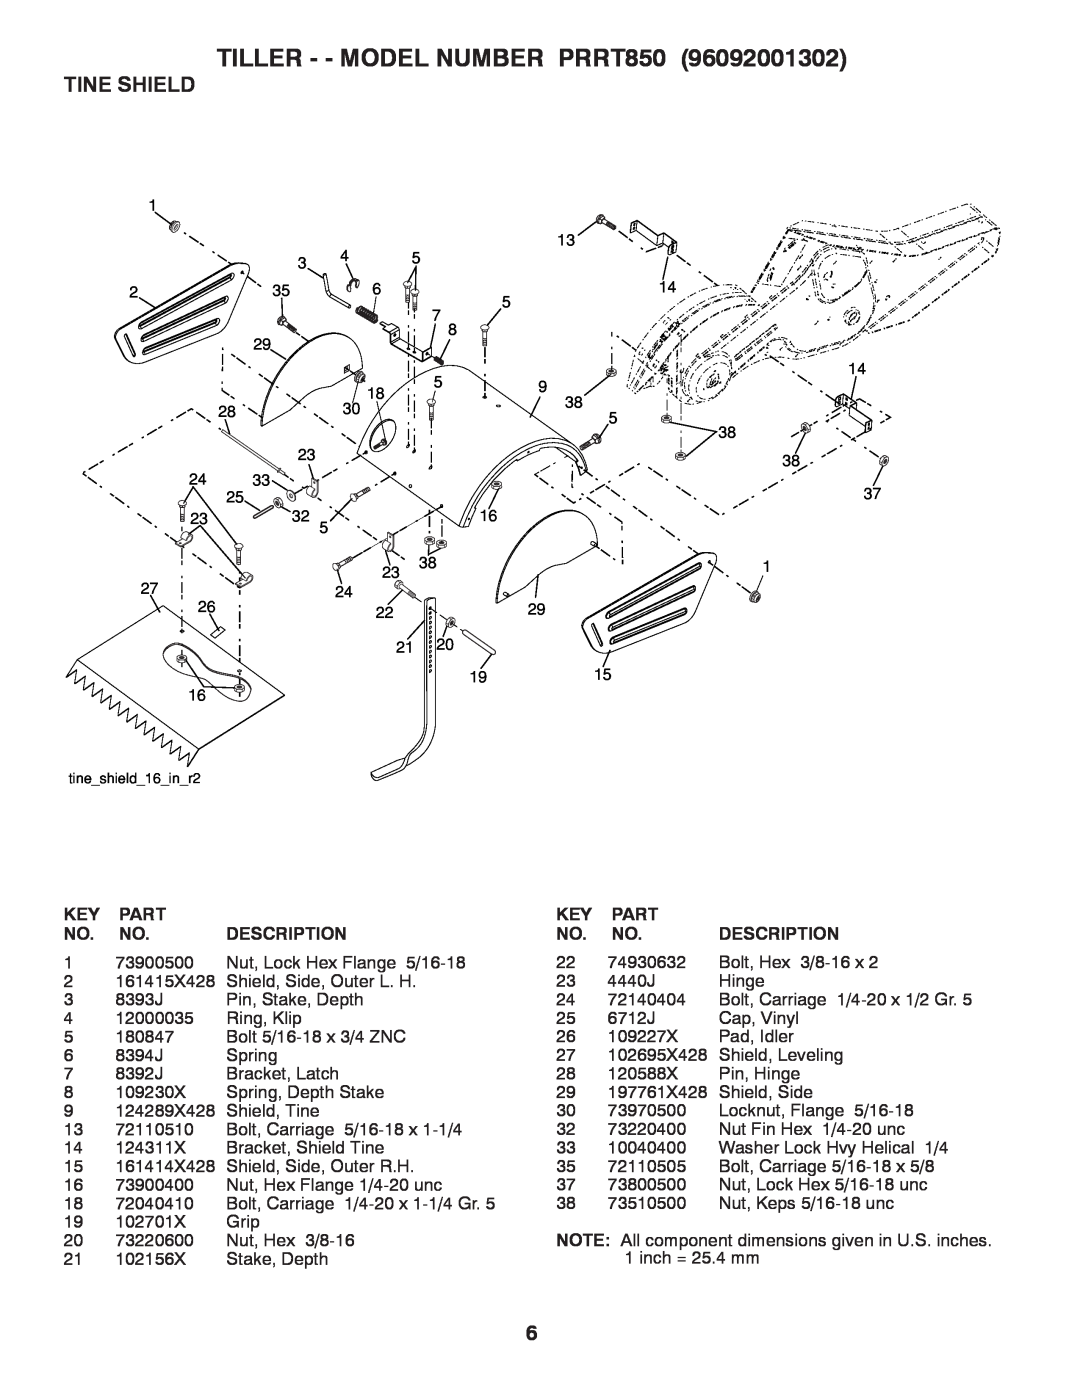 Poulan 96092001302 manual Tine Shield, TILLER - - MODEL NUMBER PRRT850, Part, Description 